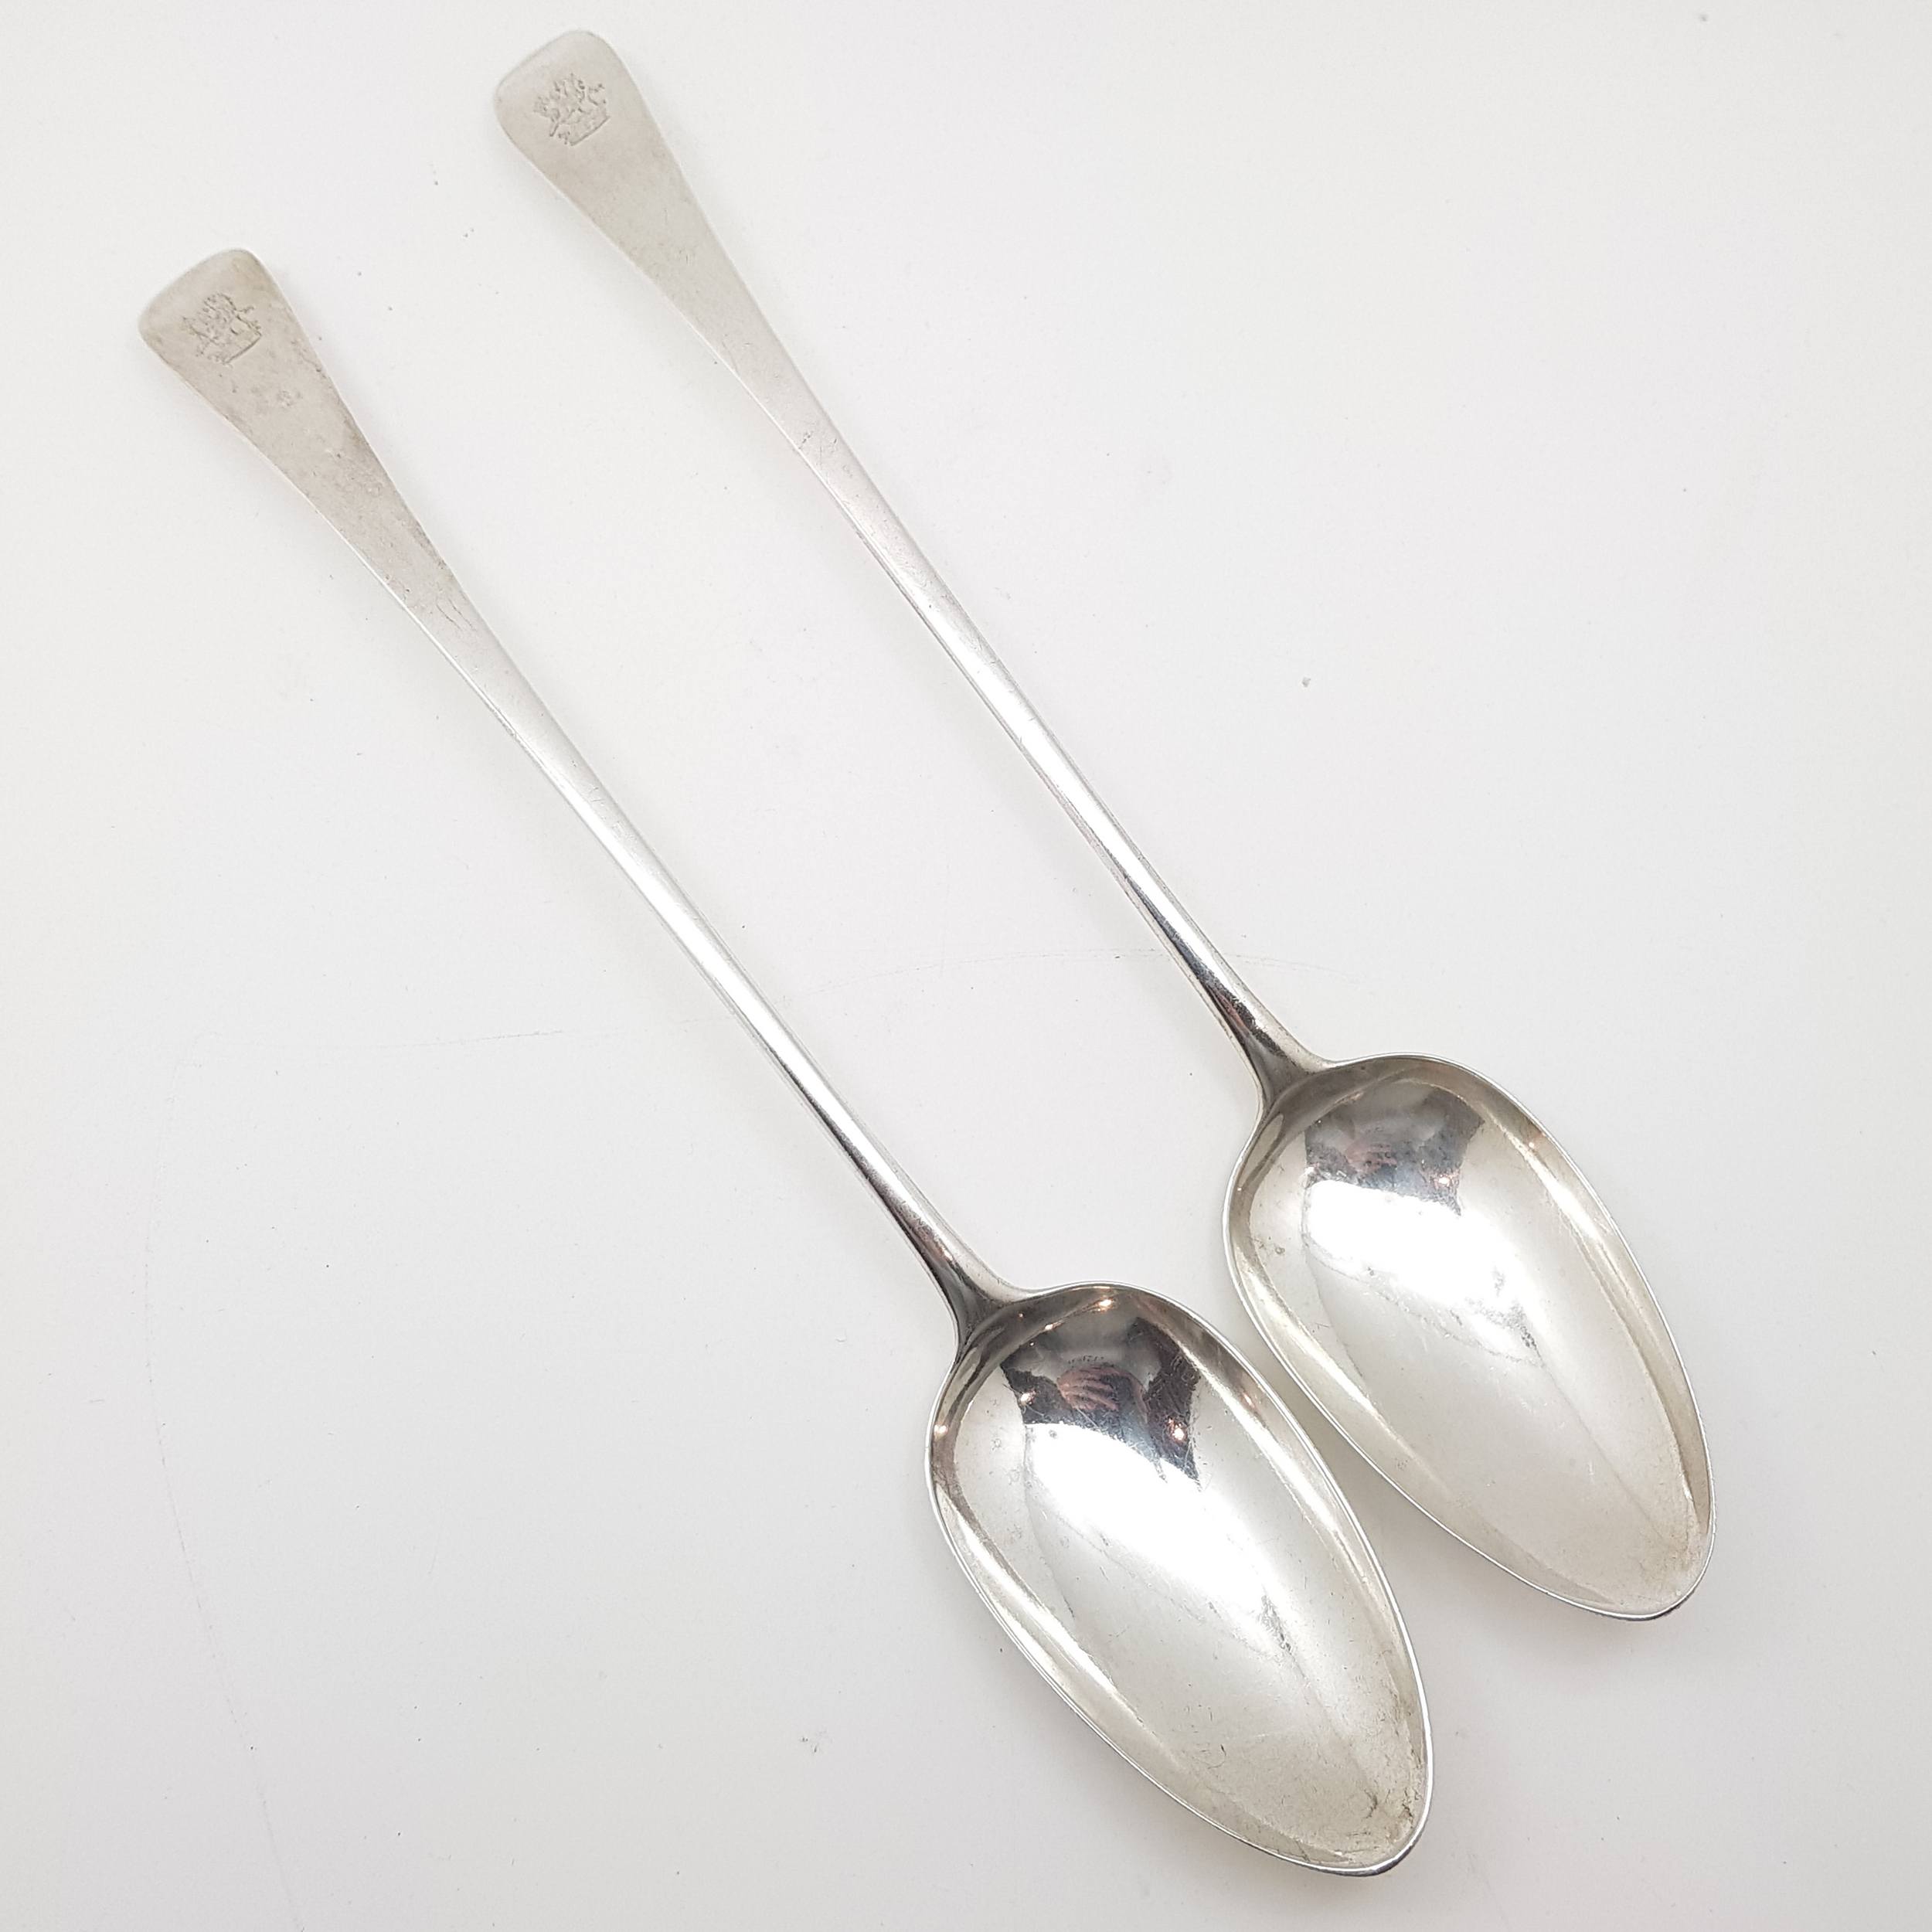 'George III Long Stem Sterling Silver Stuffing Spoons - Richard Crossley, London 1796'